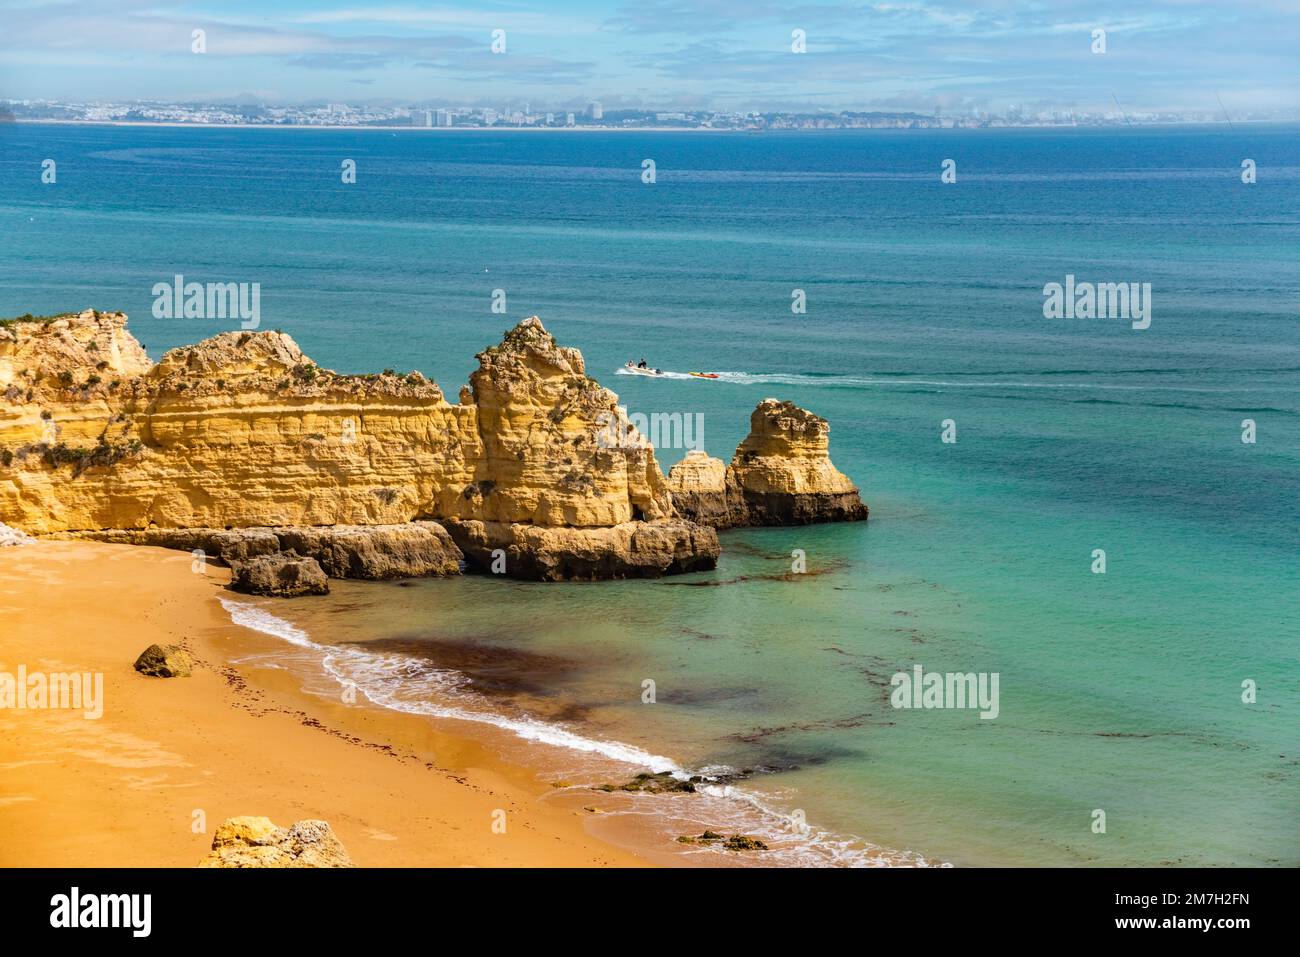 Natürliche Höhlen und Strand, Algarve Portugal. Felsbögen von sieben Hängenden Tälern und türkisfarbenes Meerwasser an der Küste Portugals in der Region Algarve Stockfoto